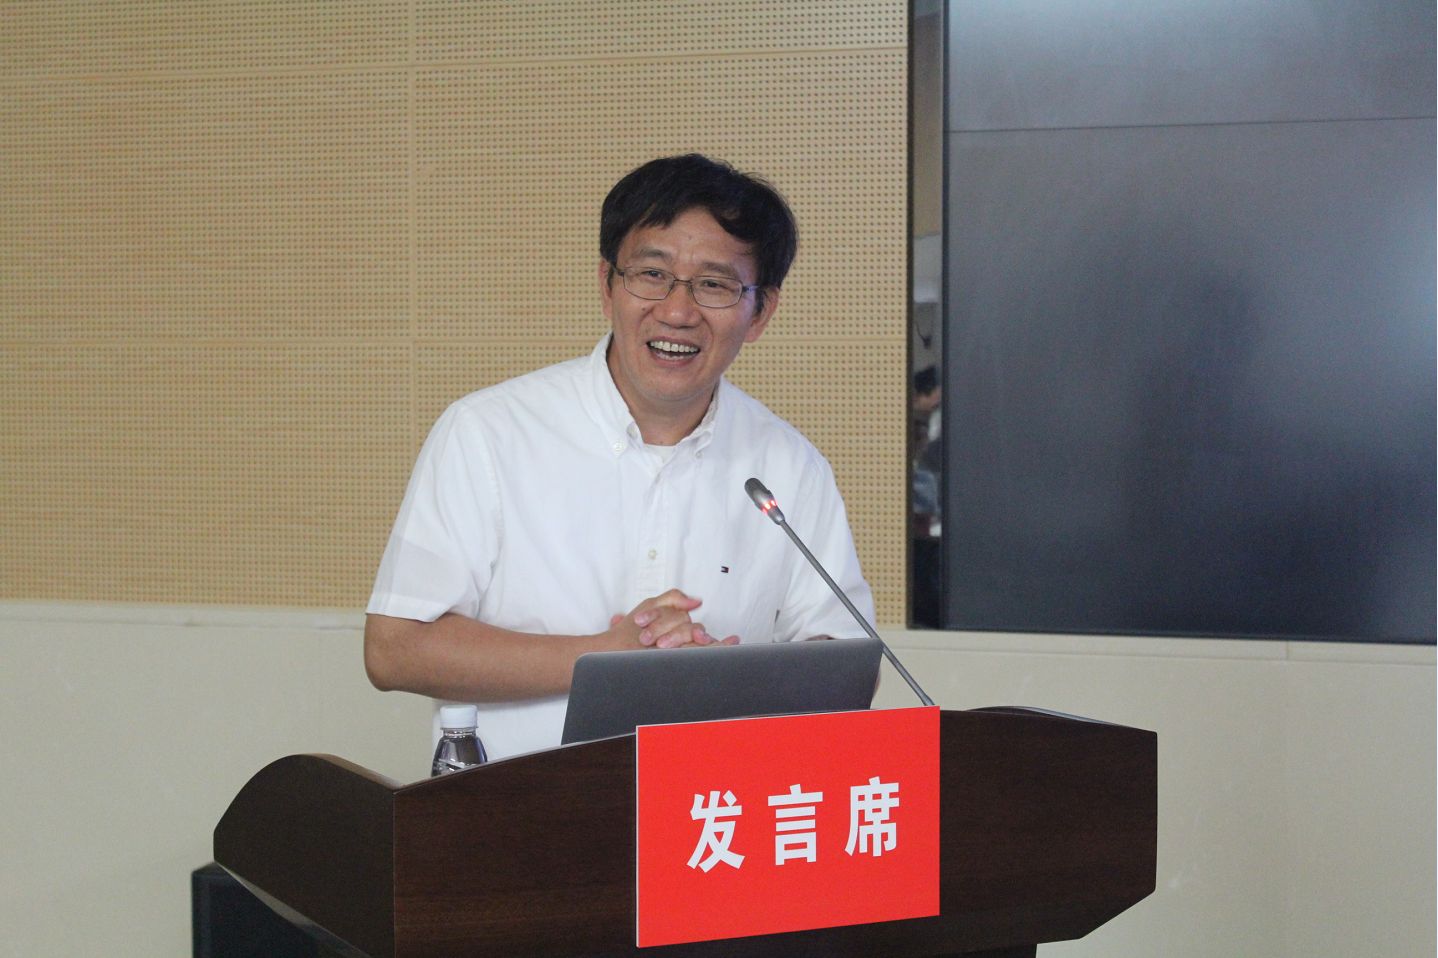 香港科技大学教授李泽湘、AutoX公司创始人肖健雄来校学术交流图文